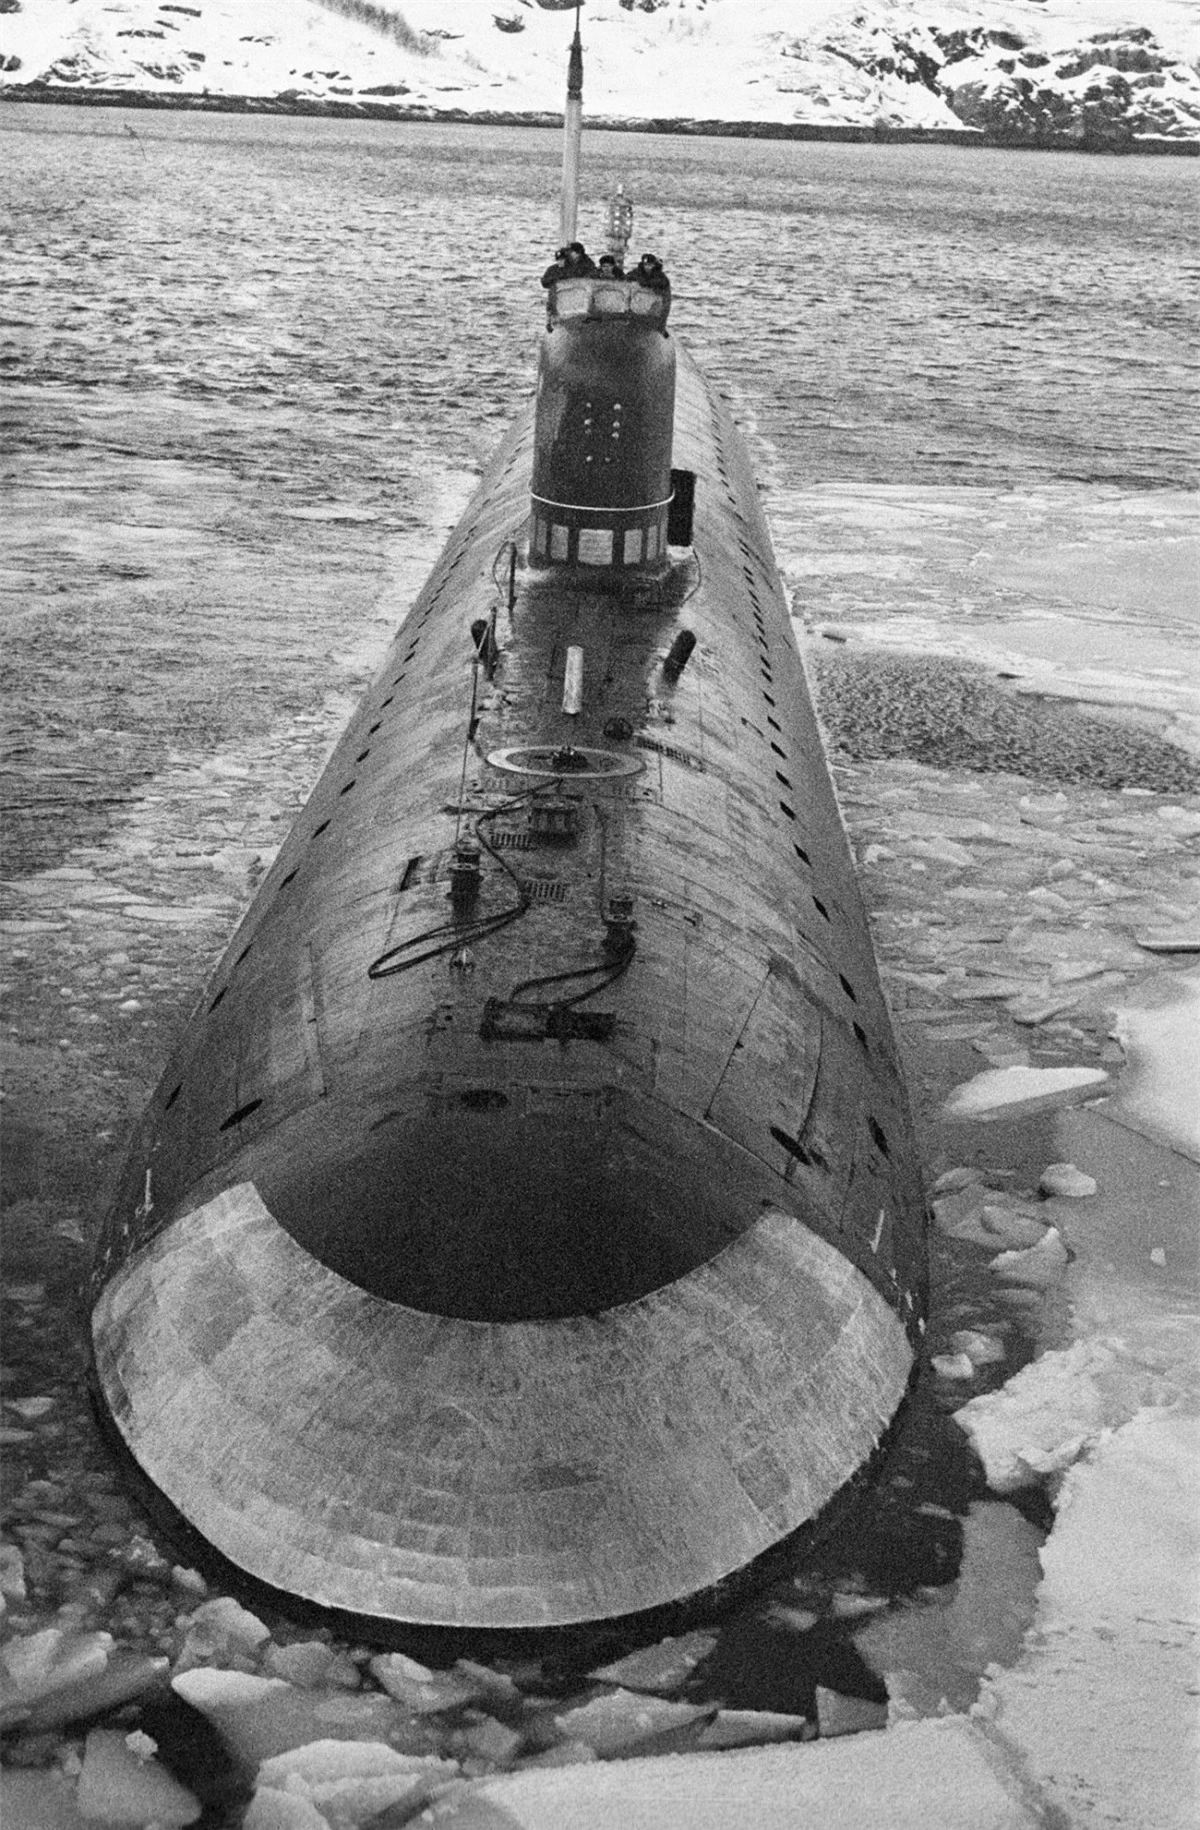 K-3 là tàu ngầm đầu tiên phá được lớp băng dày 2,5 mét ở Bắc Cực. Ảnh: Sputnik